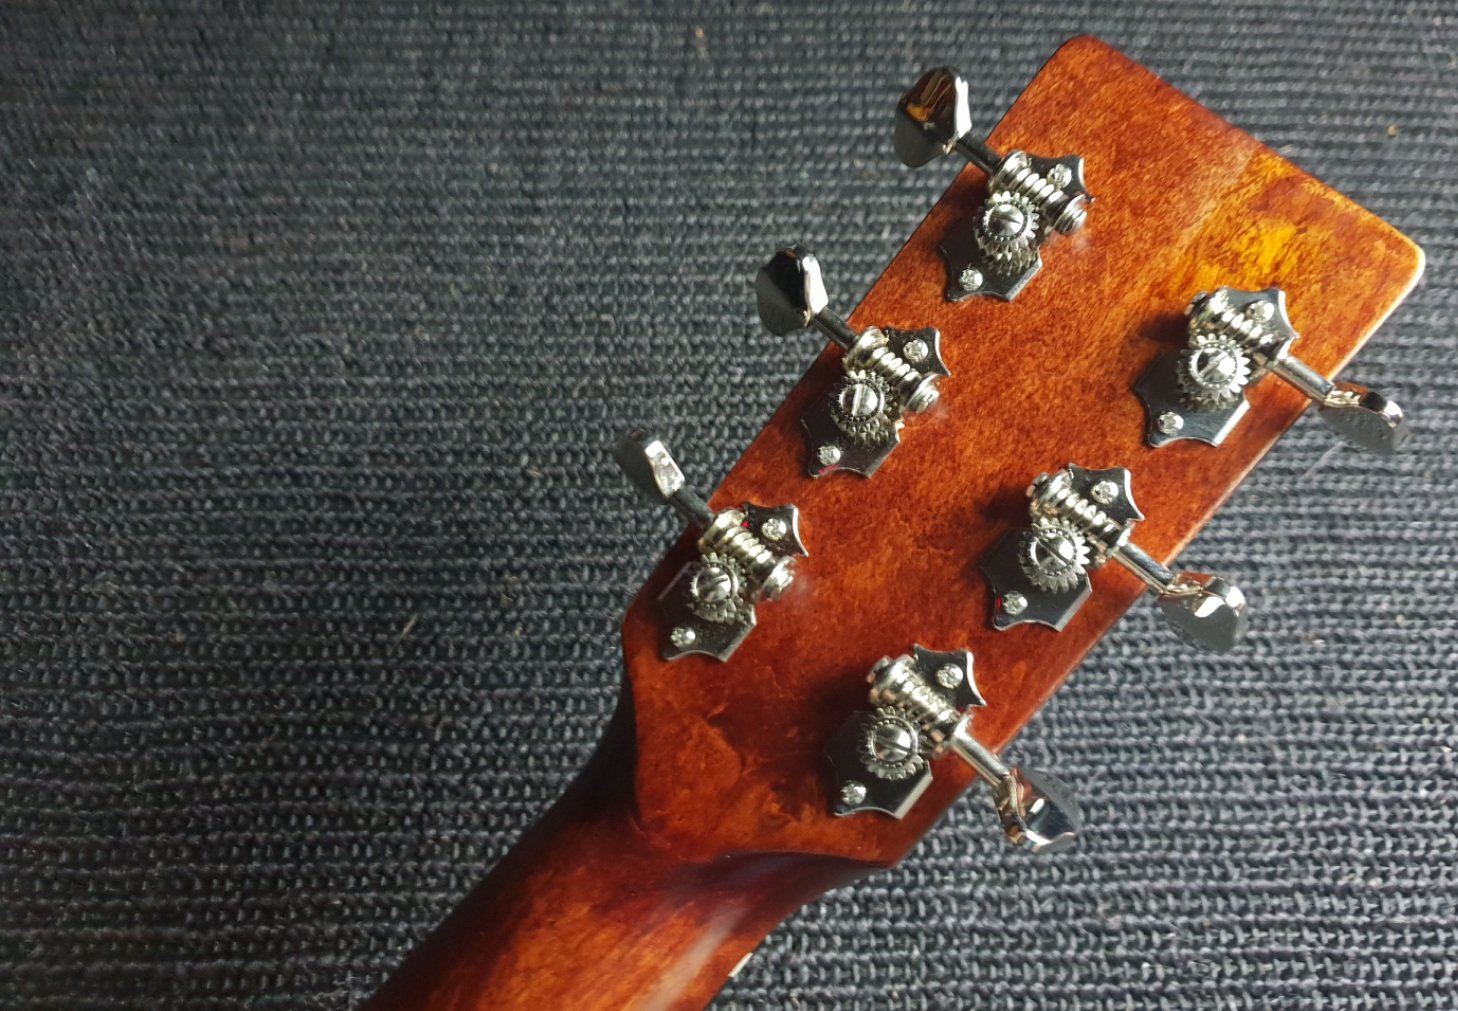 Eastman E1DL Left Handed, Acoustic Guitar for sale at Richards Guitars.